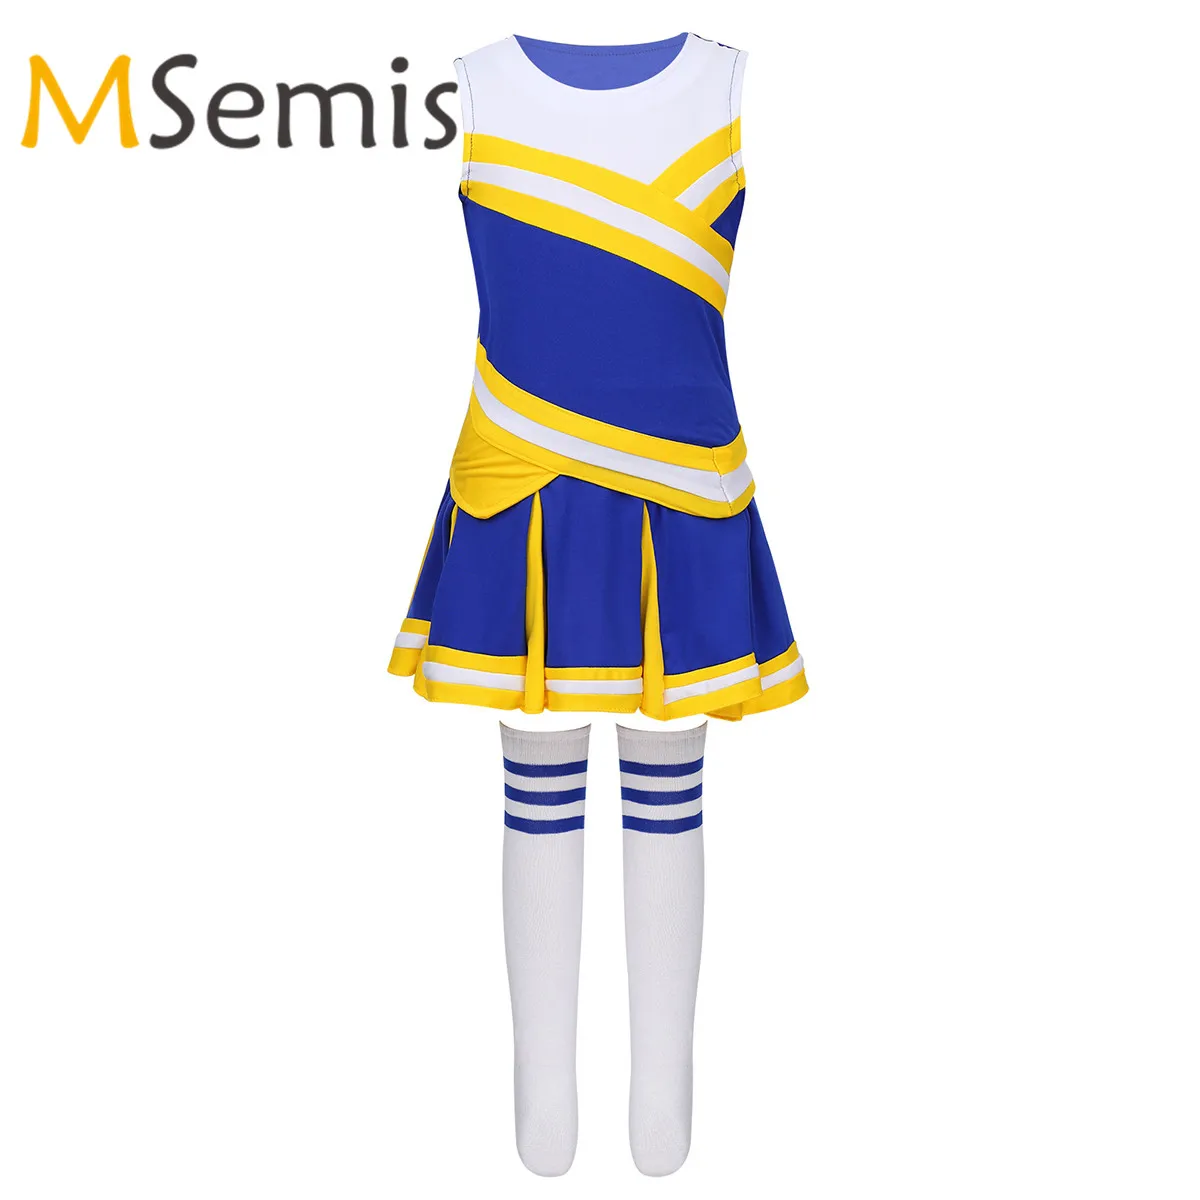 Traje de uniforme de animadora para niños y niñas, conjunto de Top con falda y calcetines, disfraz deportivo de animadora para carnaval